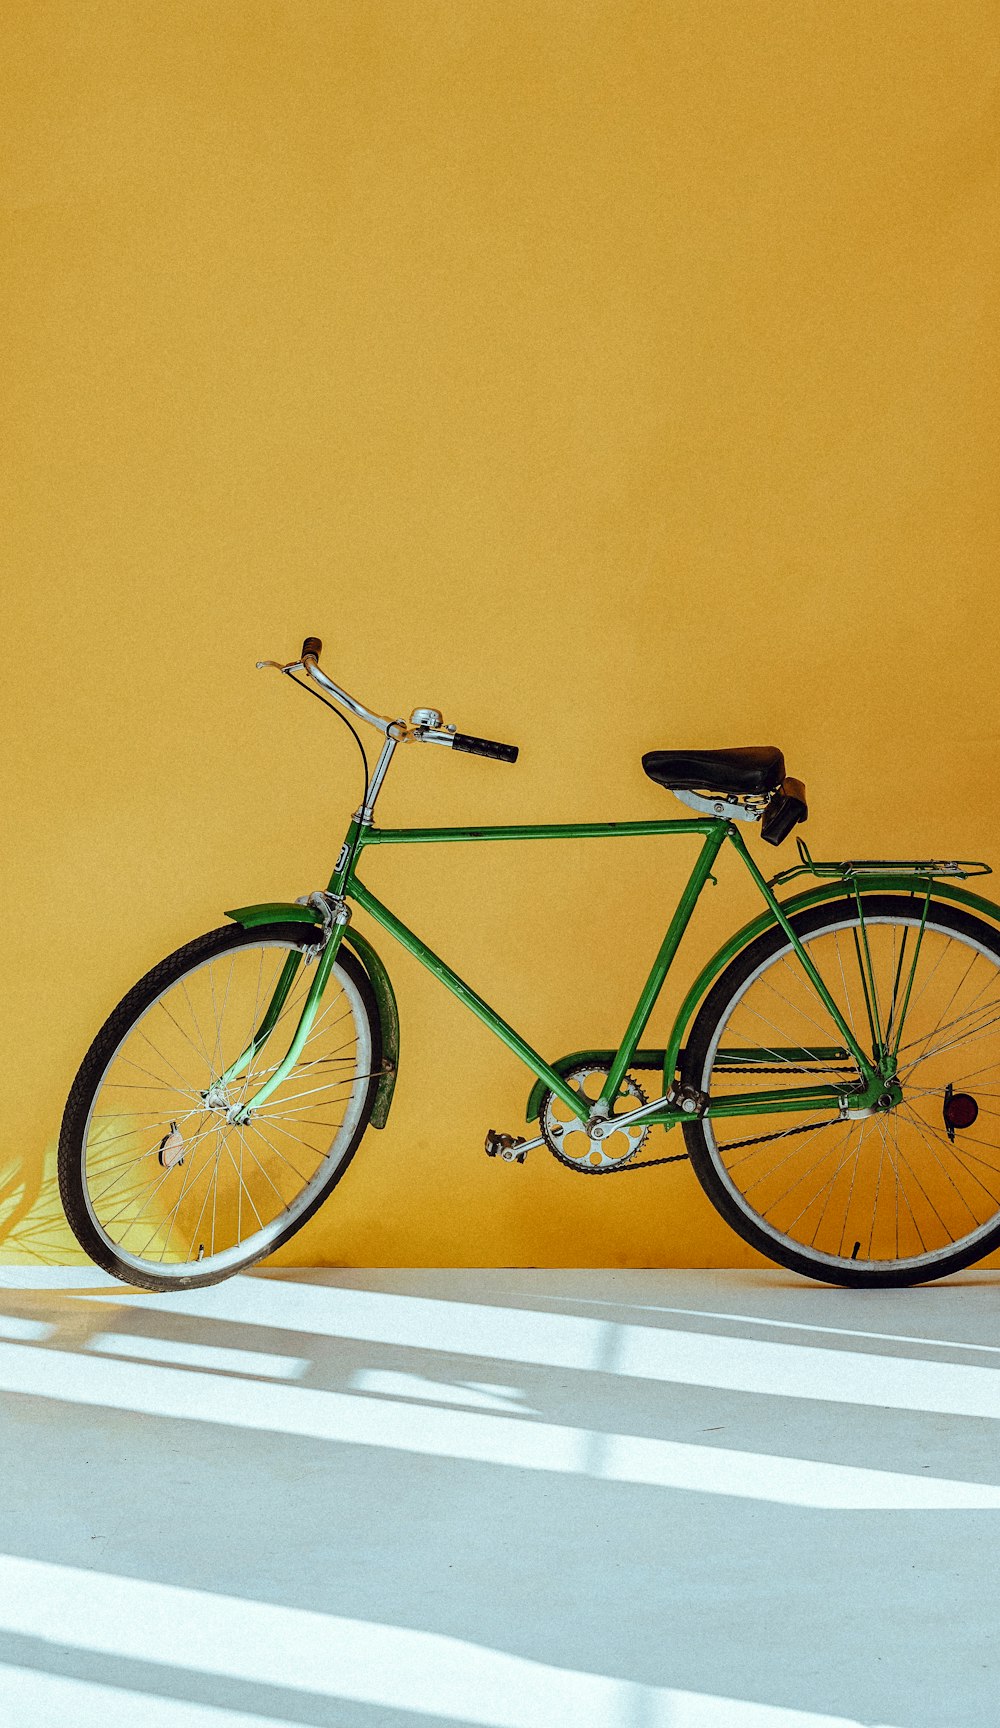 주차된 녹색 자전거